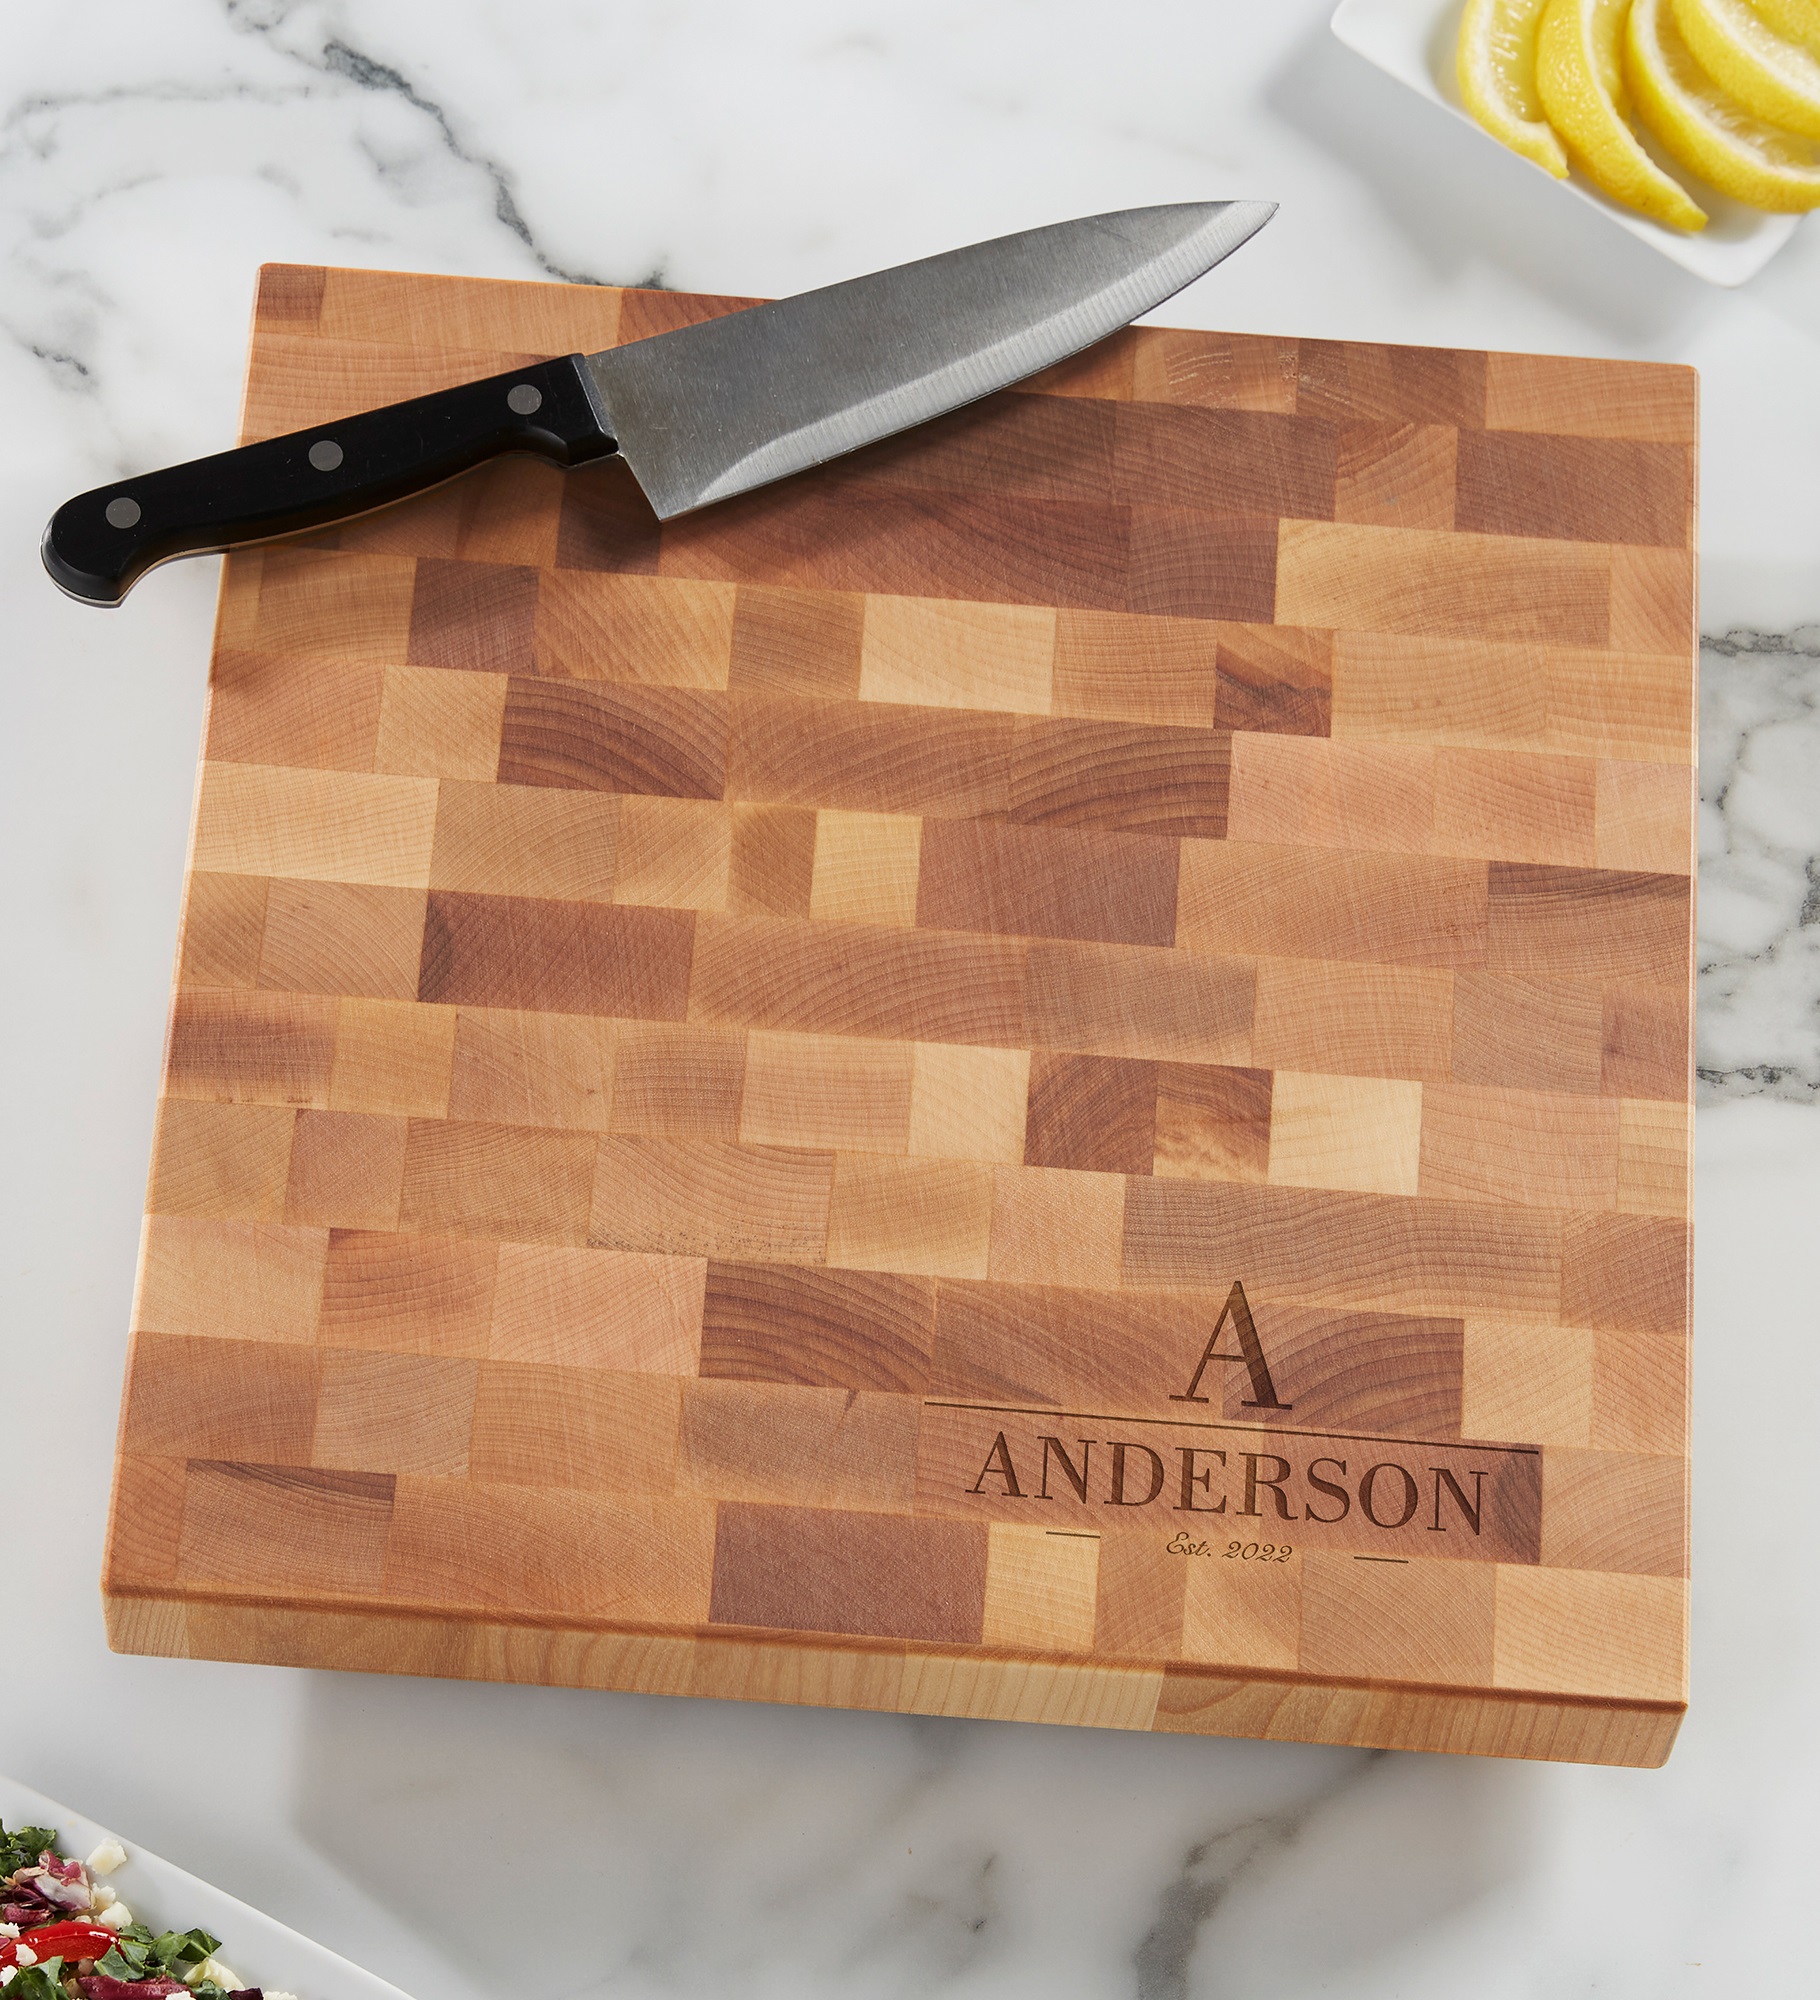 Decorative Name & Initial Personalized Butcher Block Cutting Board